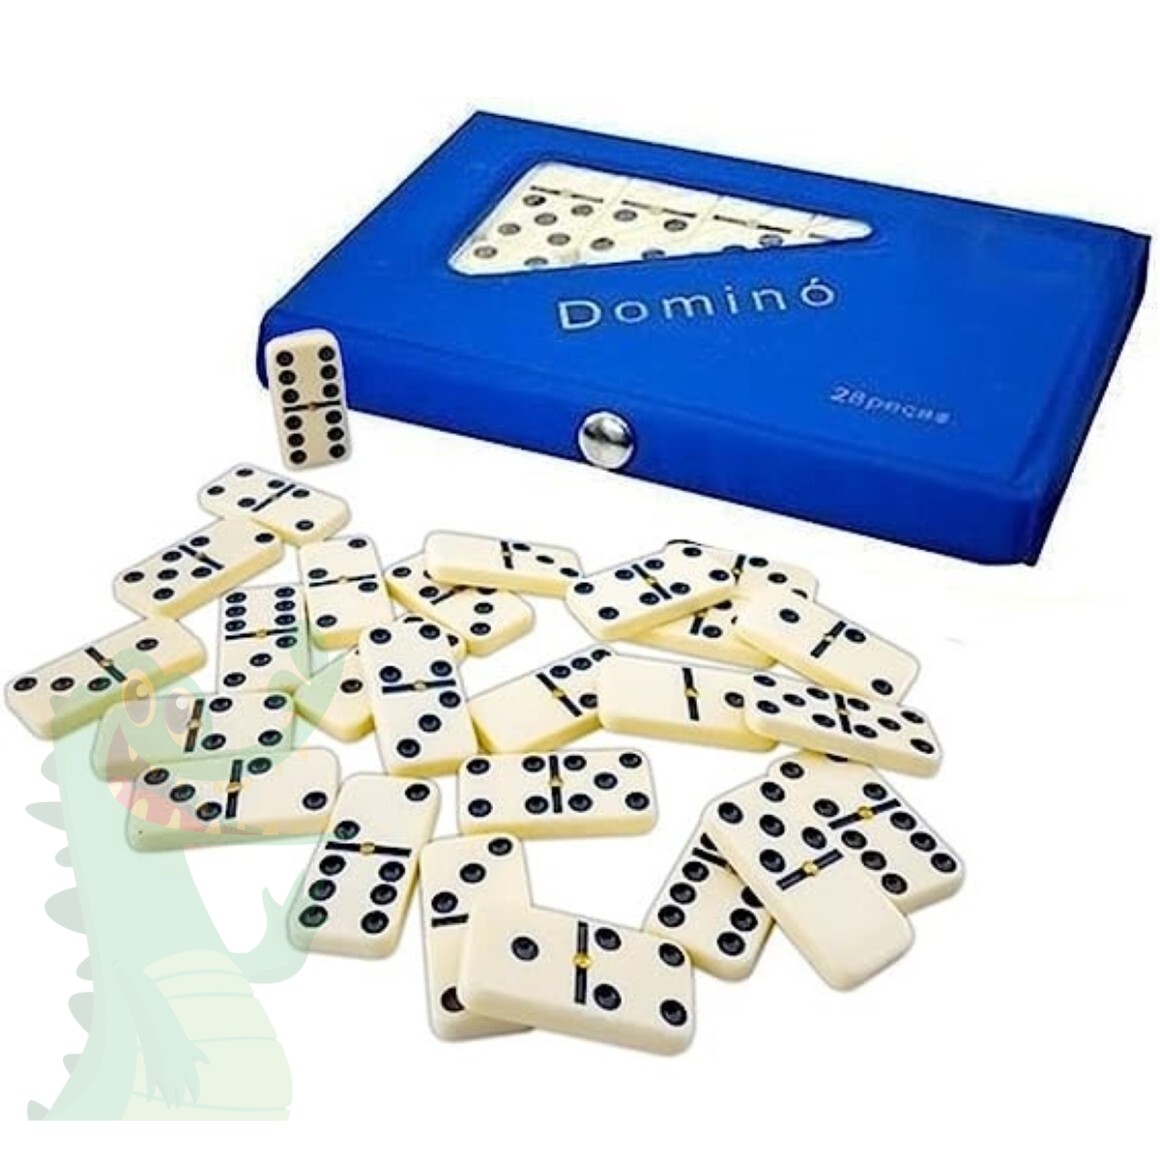 Jogo De Domino Profissional 28 Peças Caixa Luxo De Madeira em